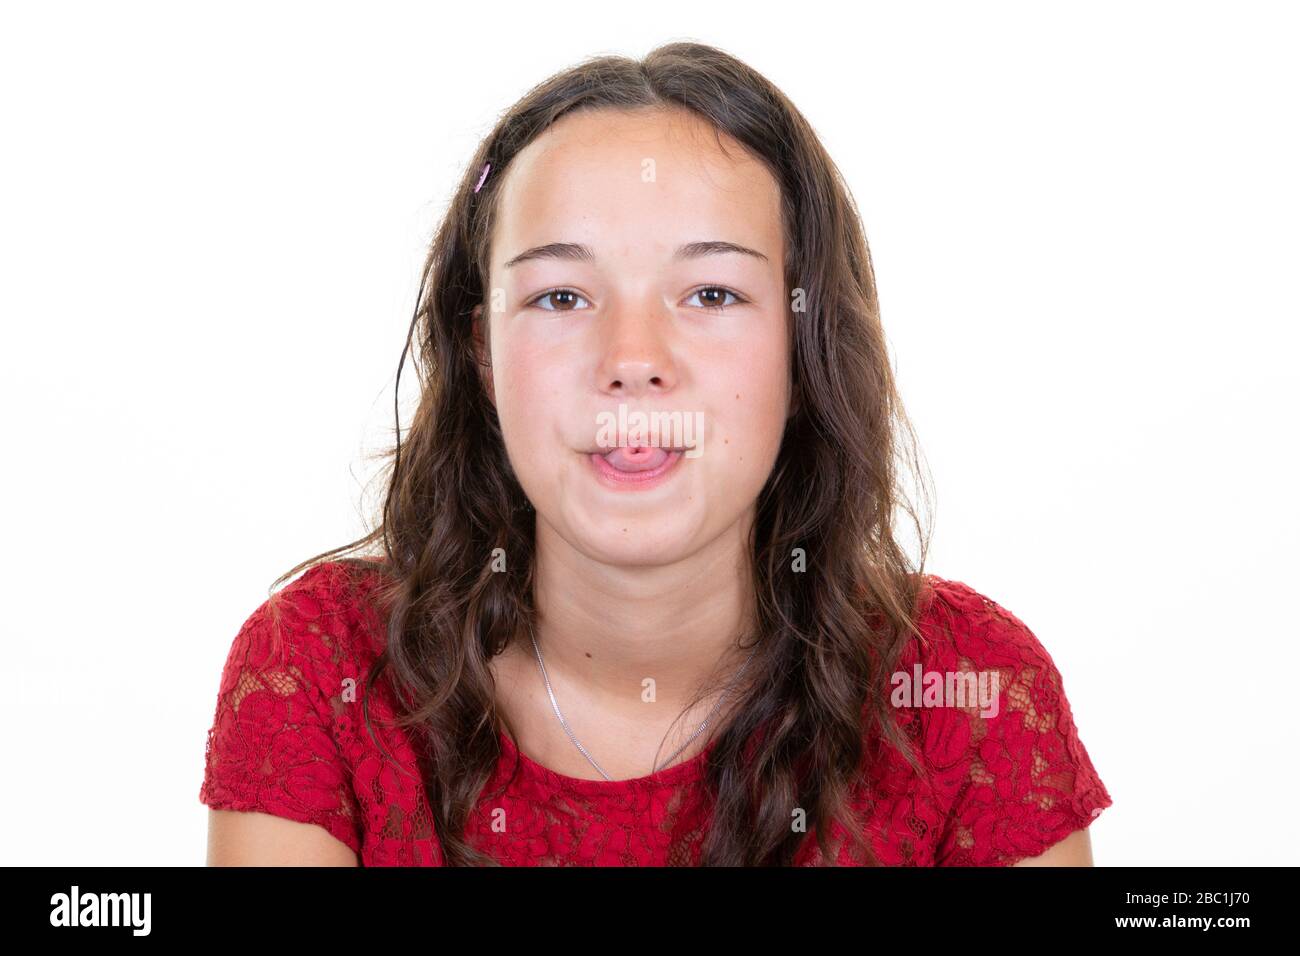 Süßes Mädchen Das Ein Lustiges Gesicht Mit Hervorstitzender Zunge Macht Stockfotografie Alamy 